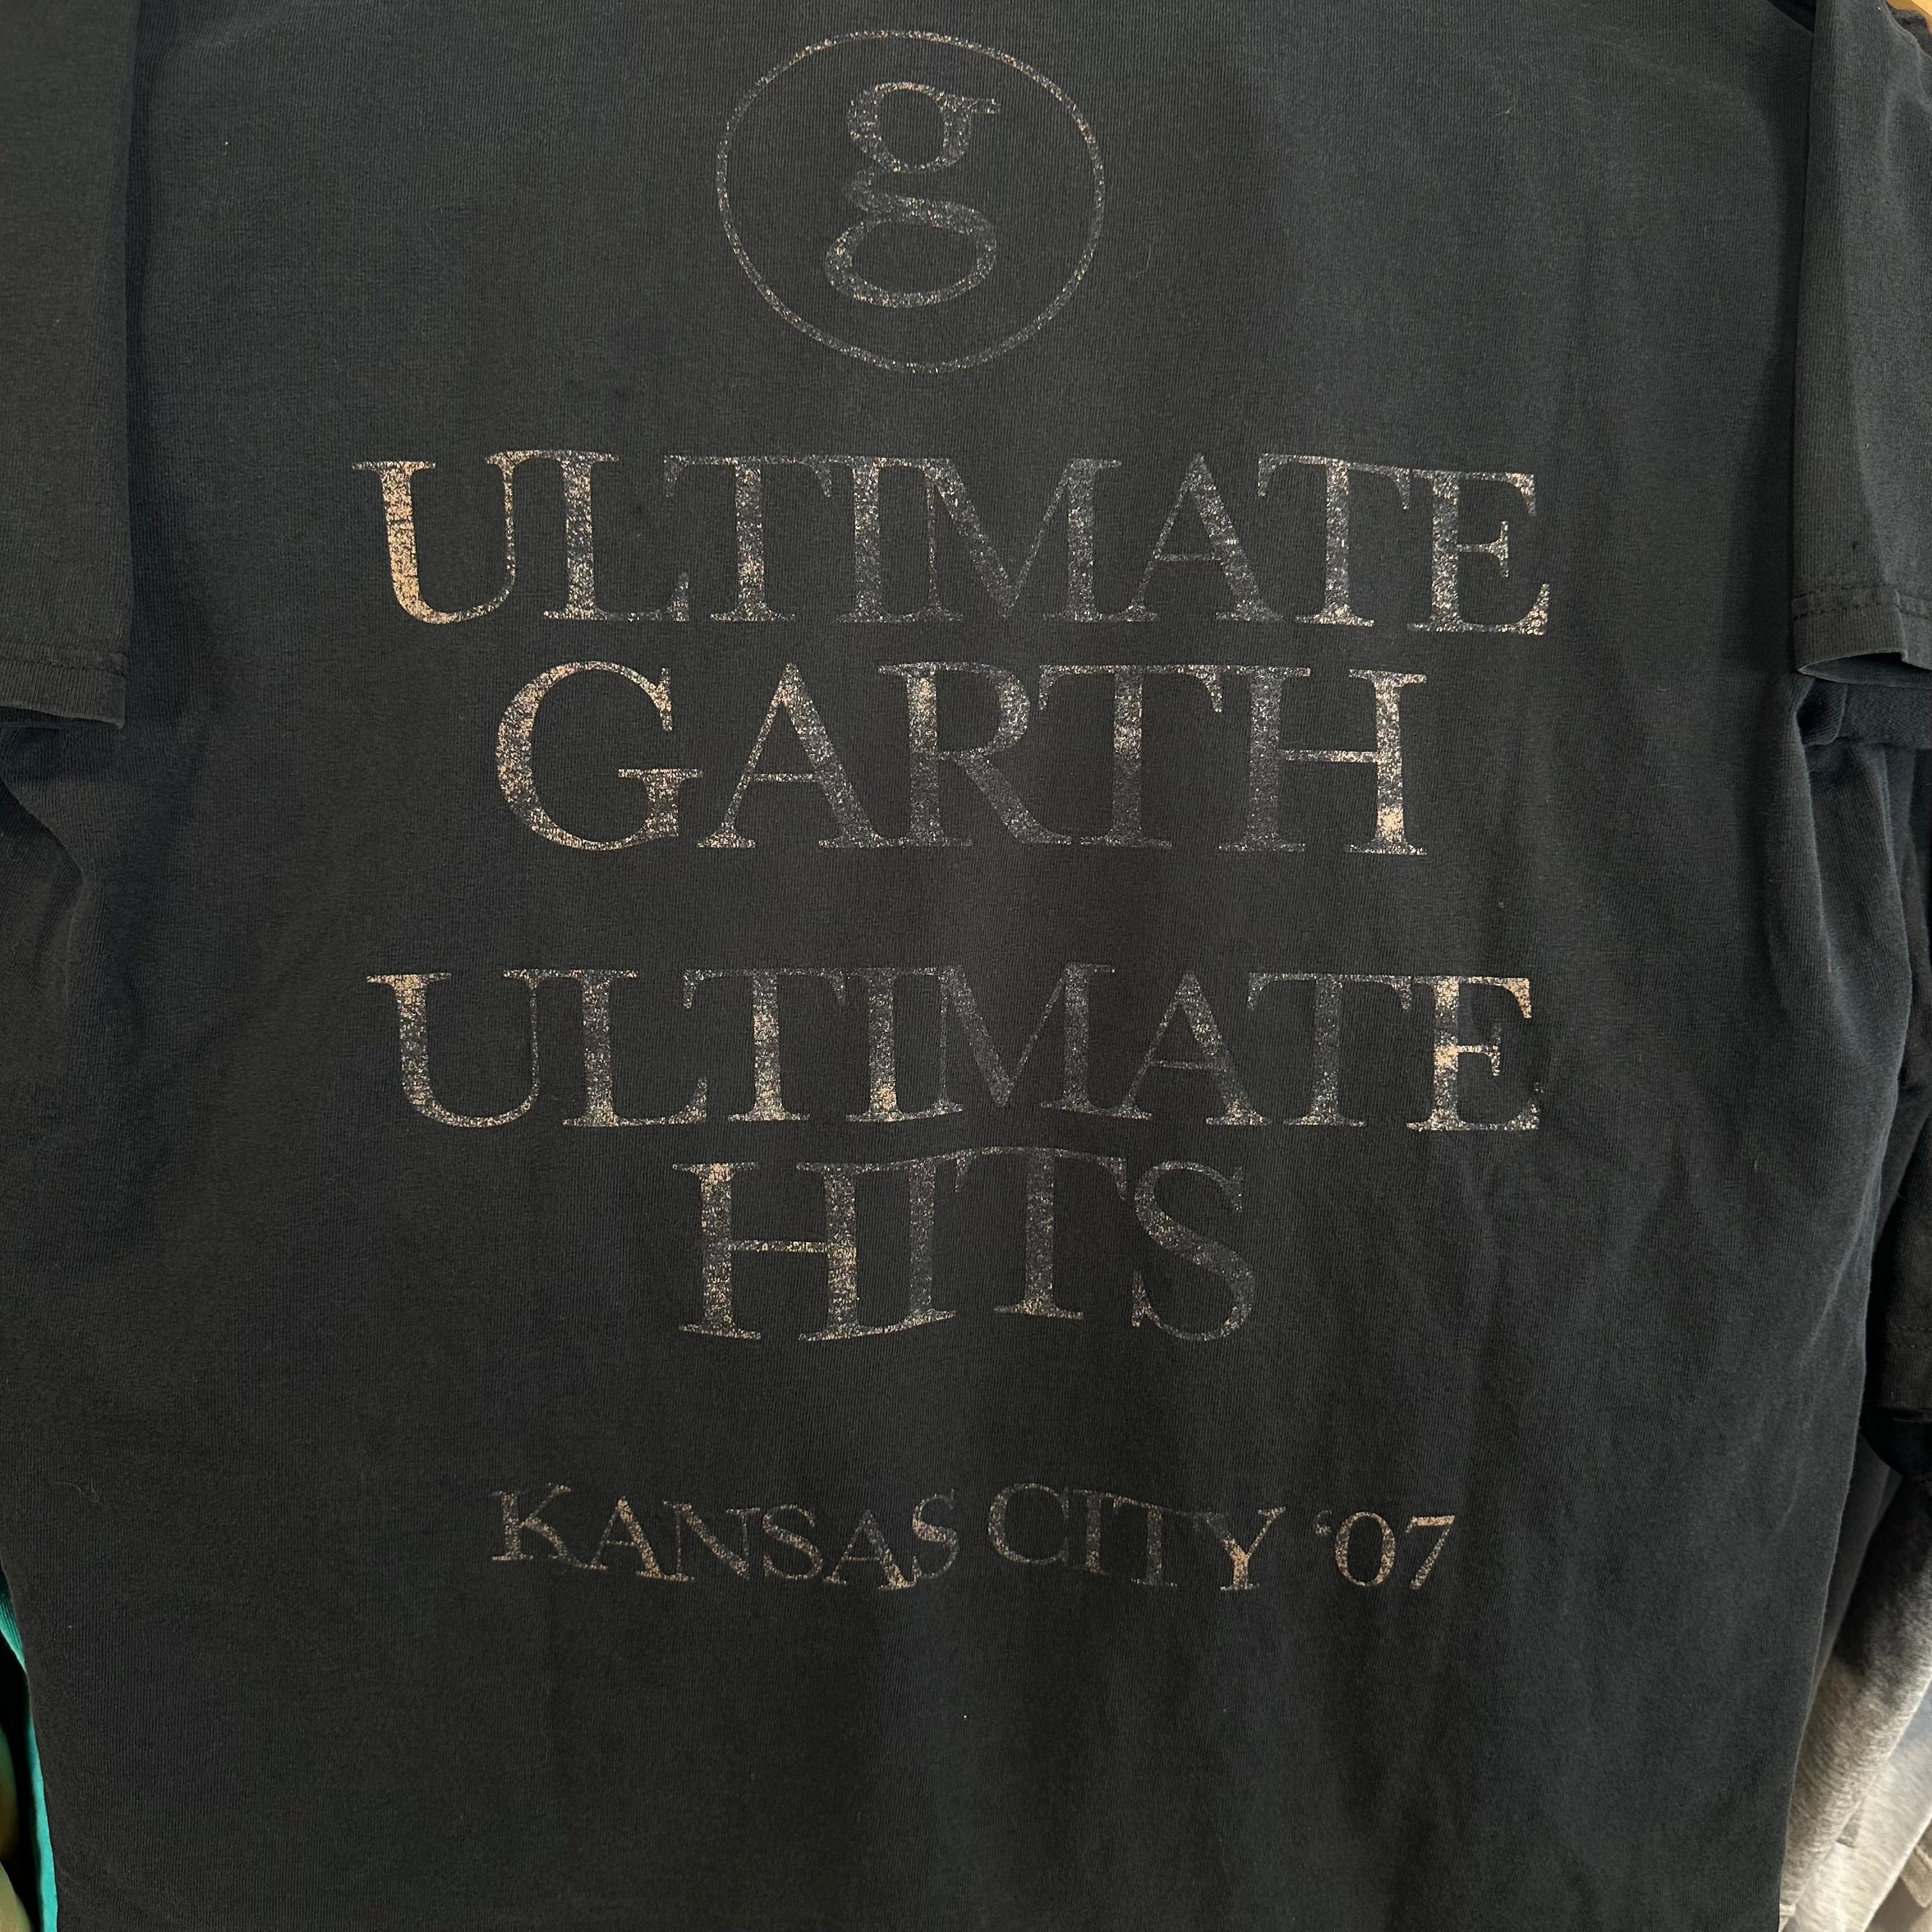 Garth Brooks Kansas City 2007 T-Shirt